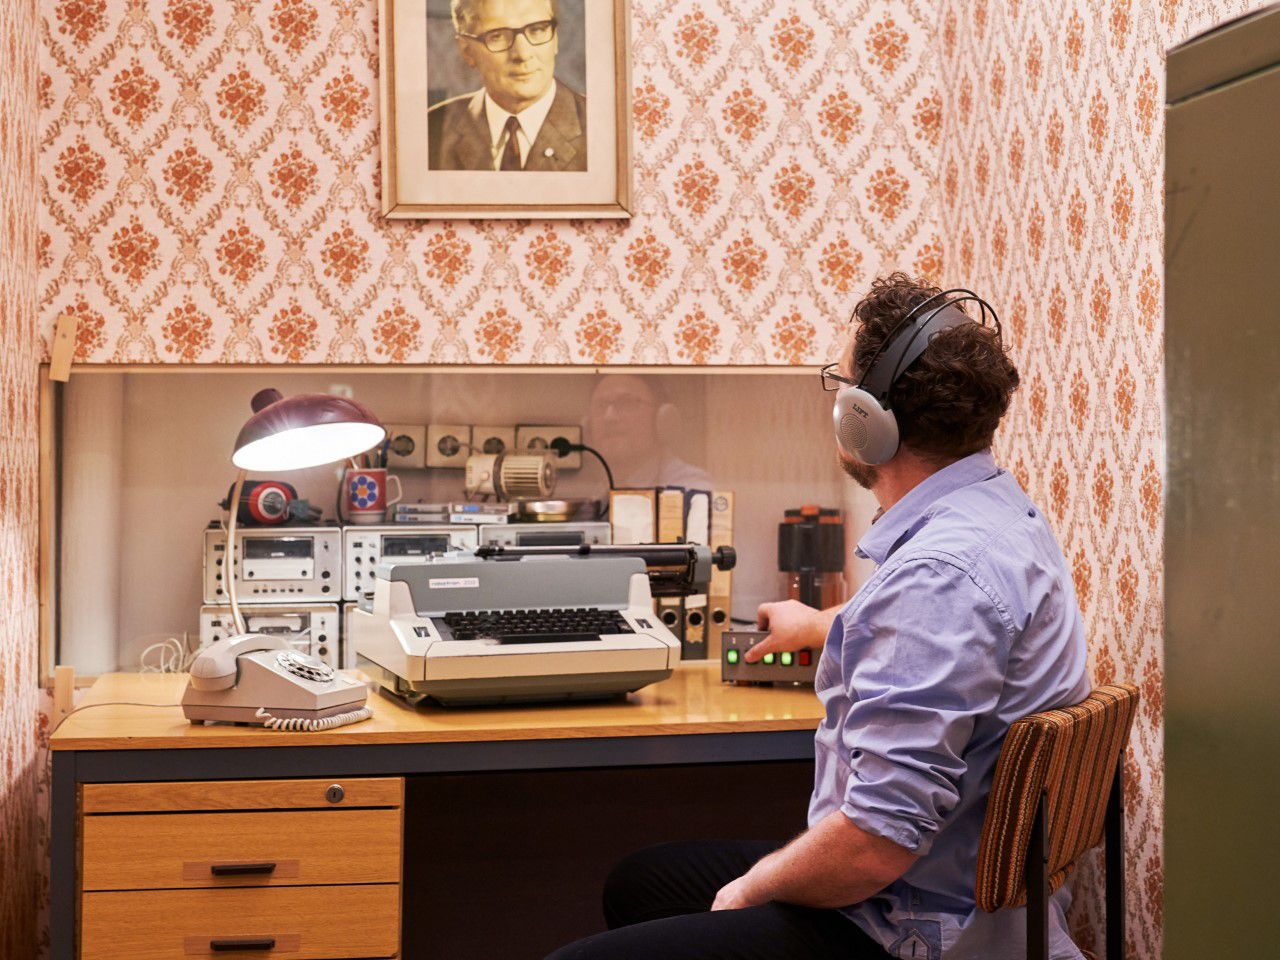 DDR Museum, Abhören, Besucher sitzt am Schreibtisch mit Kopfhörern auf, Bild von Erich Honecker an der Wand